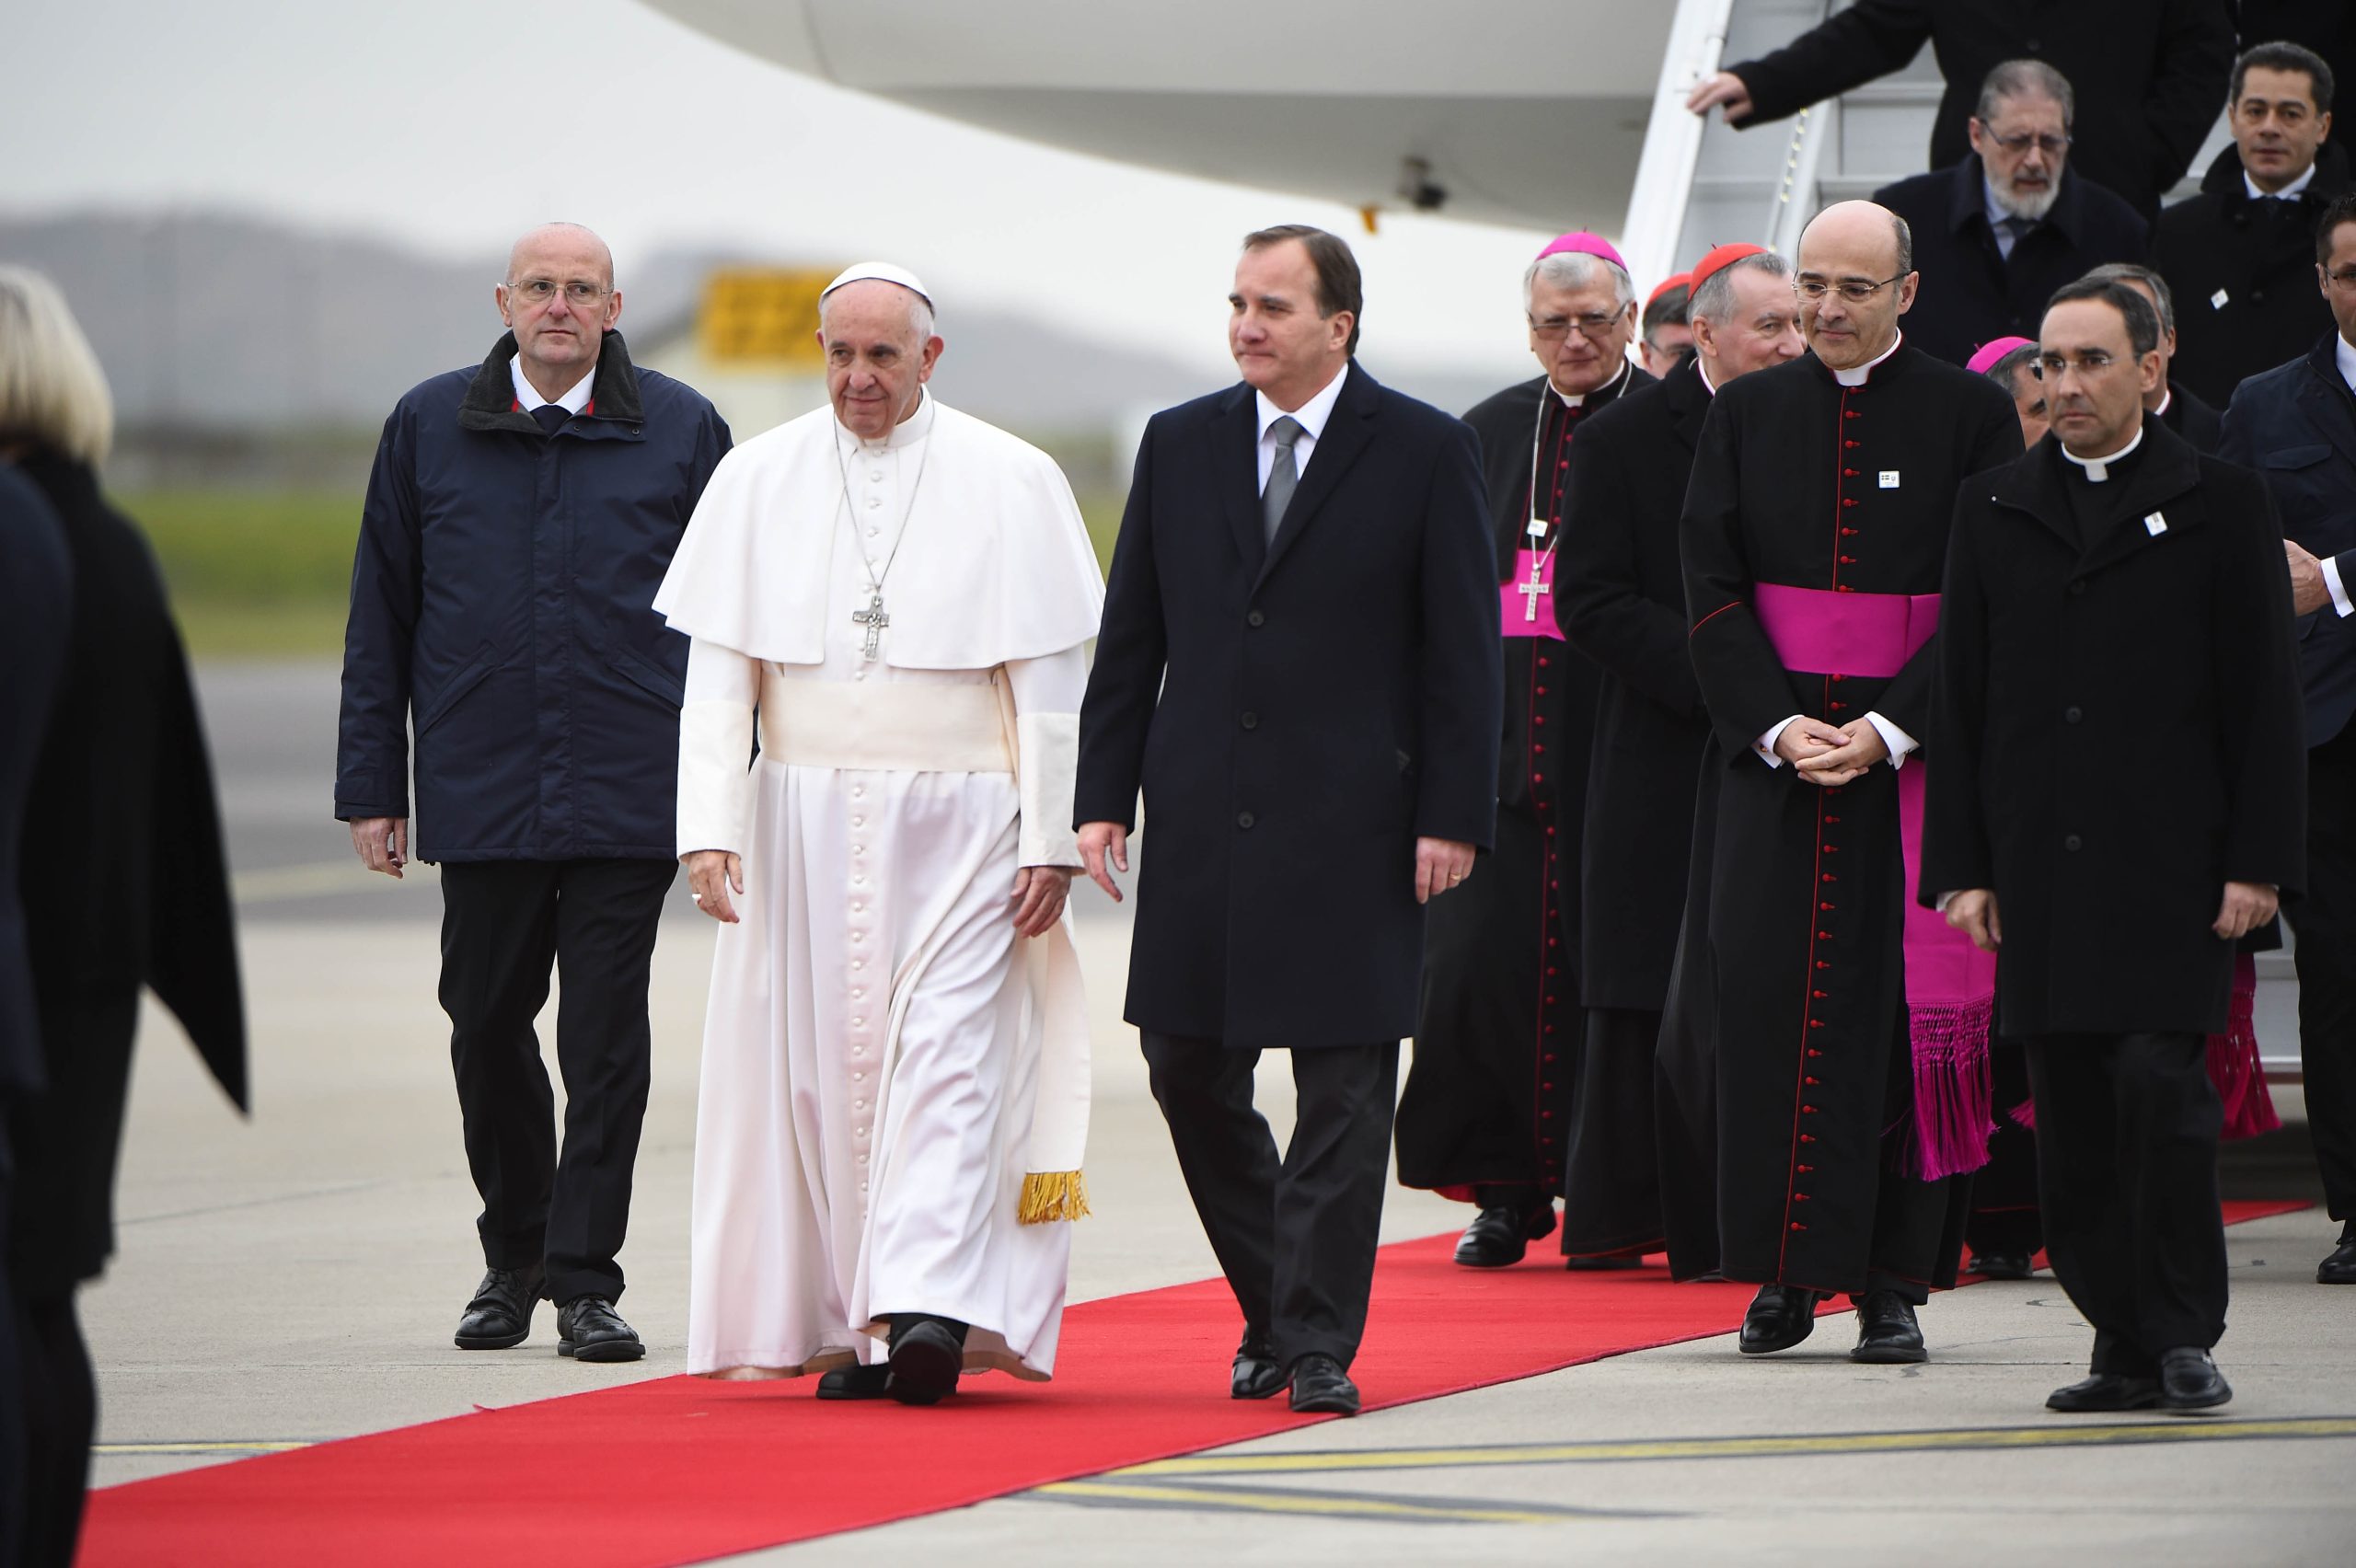 Arrivée du pape en Suède - Norway Today - 3